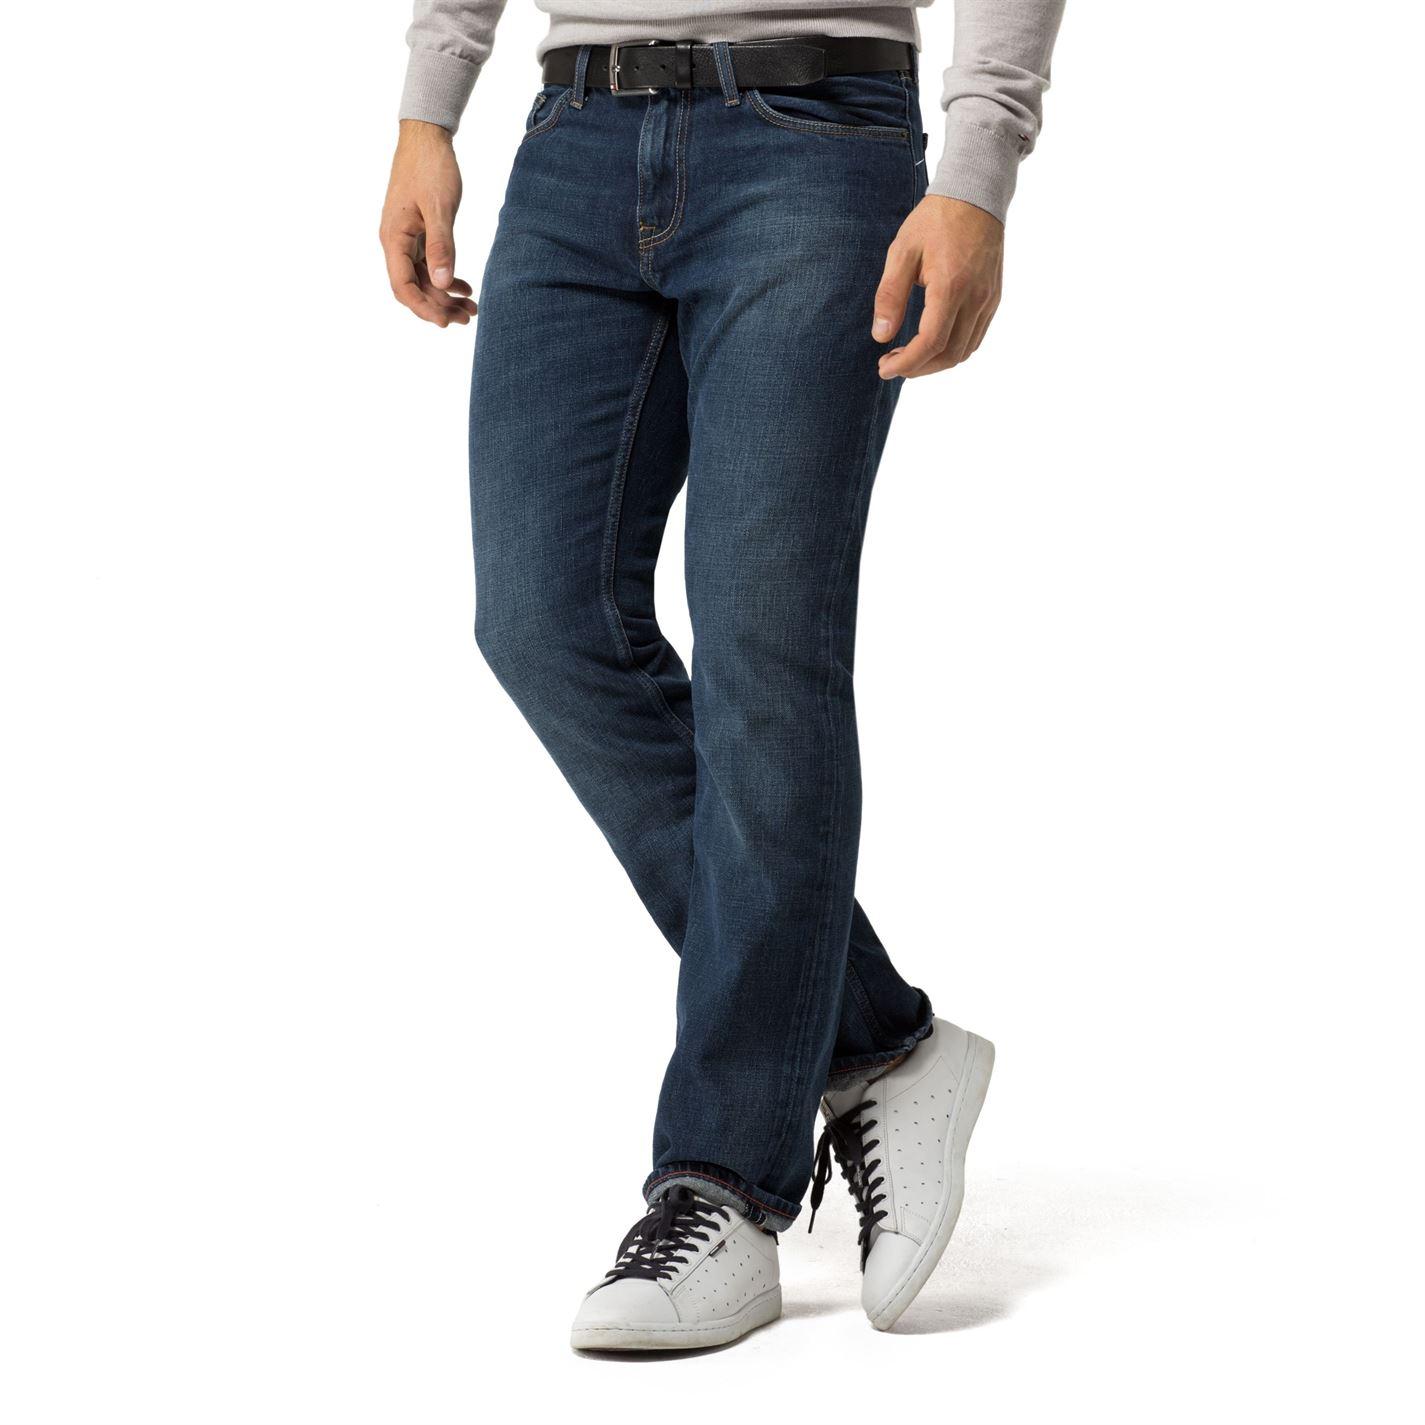 البلعوم تحويلات تحدث في كثير من الأحيان شريحة لحم قصة طويلة ورم tommy  hilfiger mercer straight leg jeans - sayasouthex.com